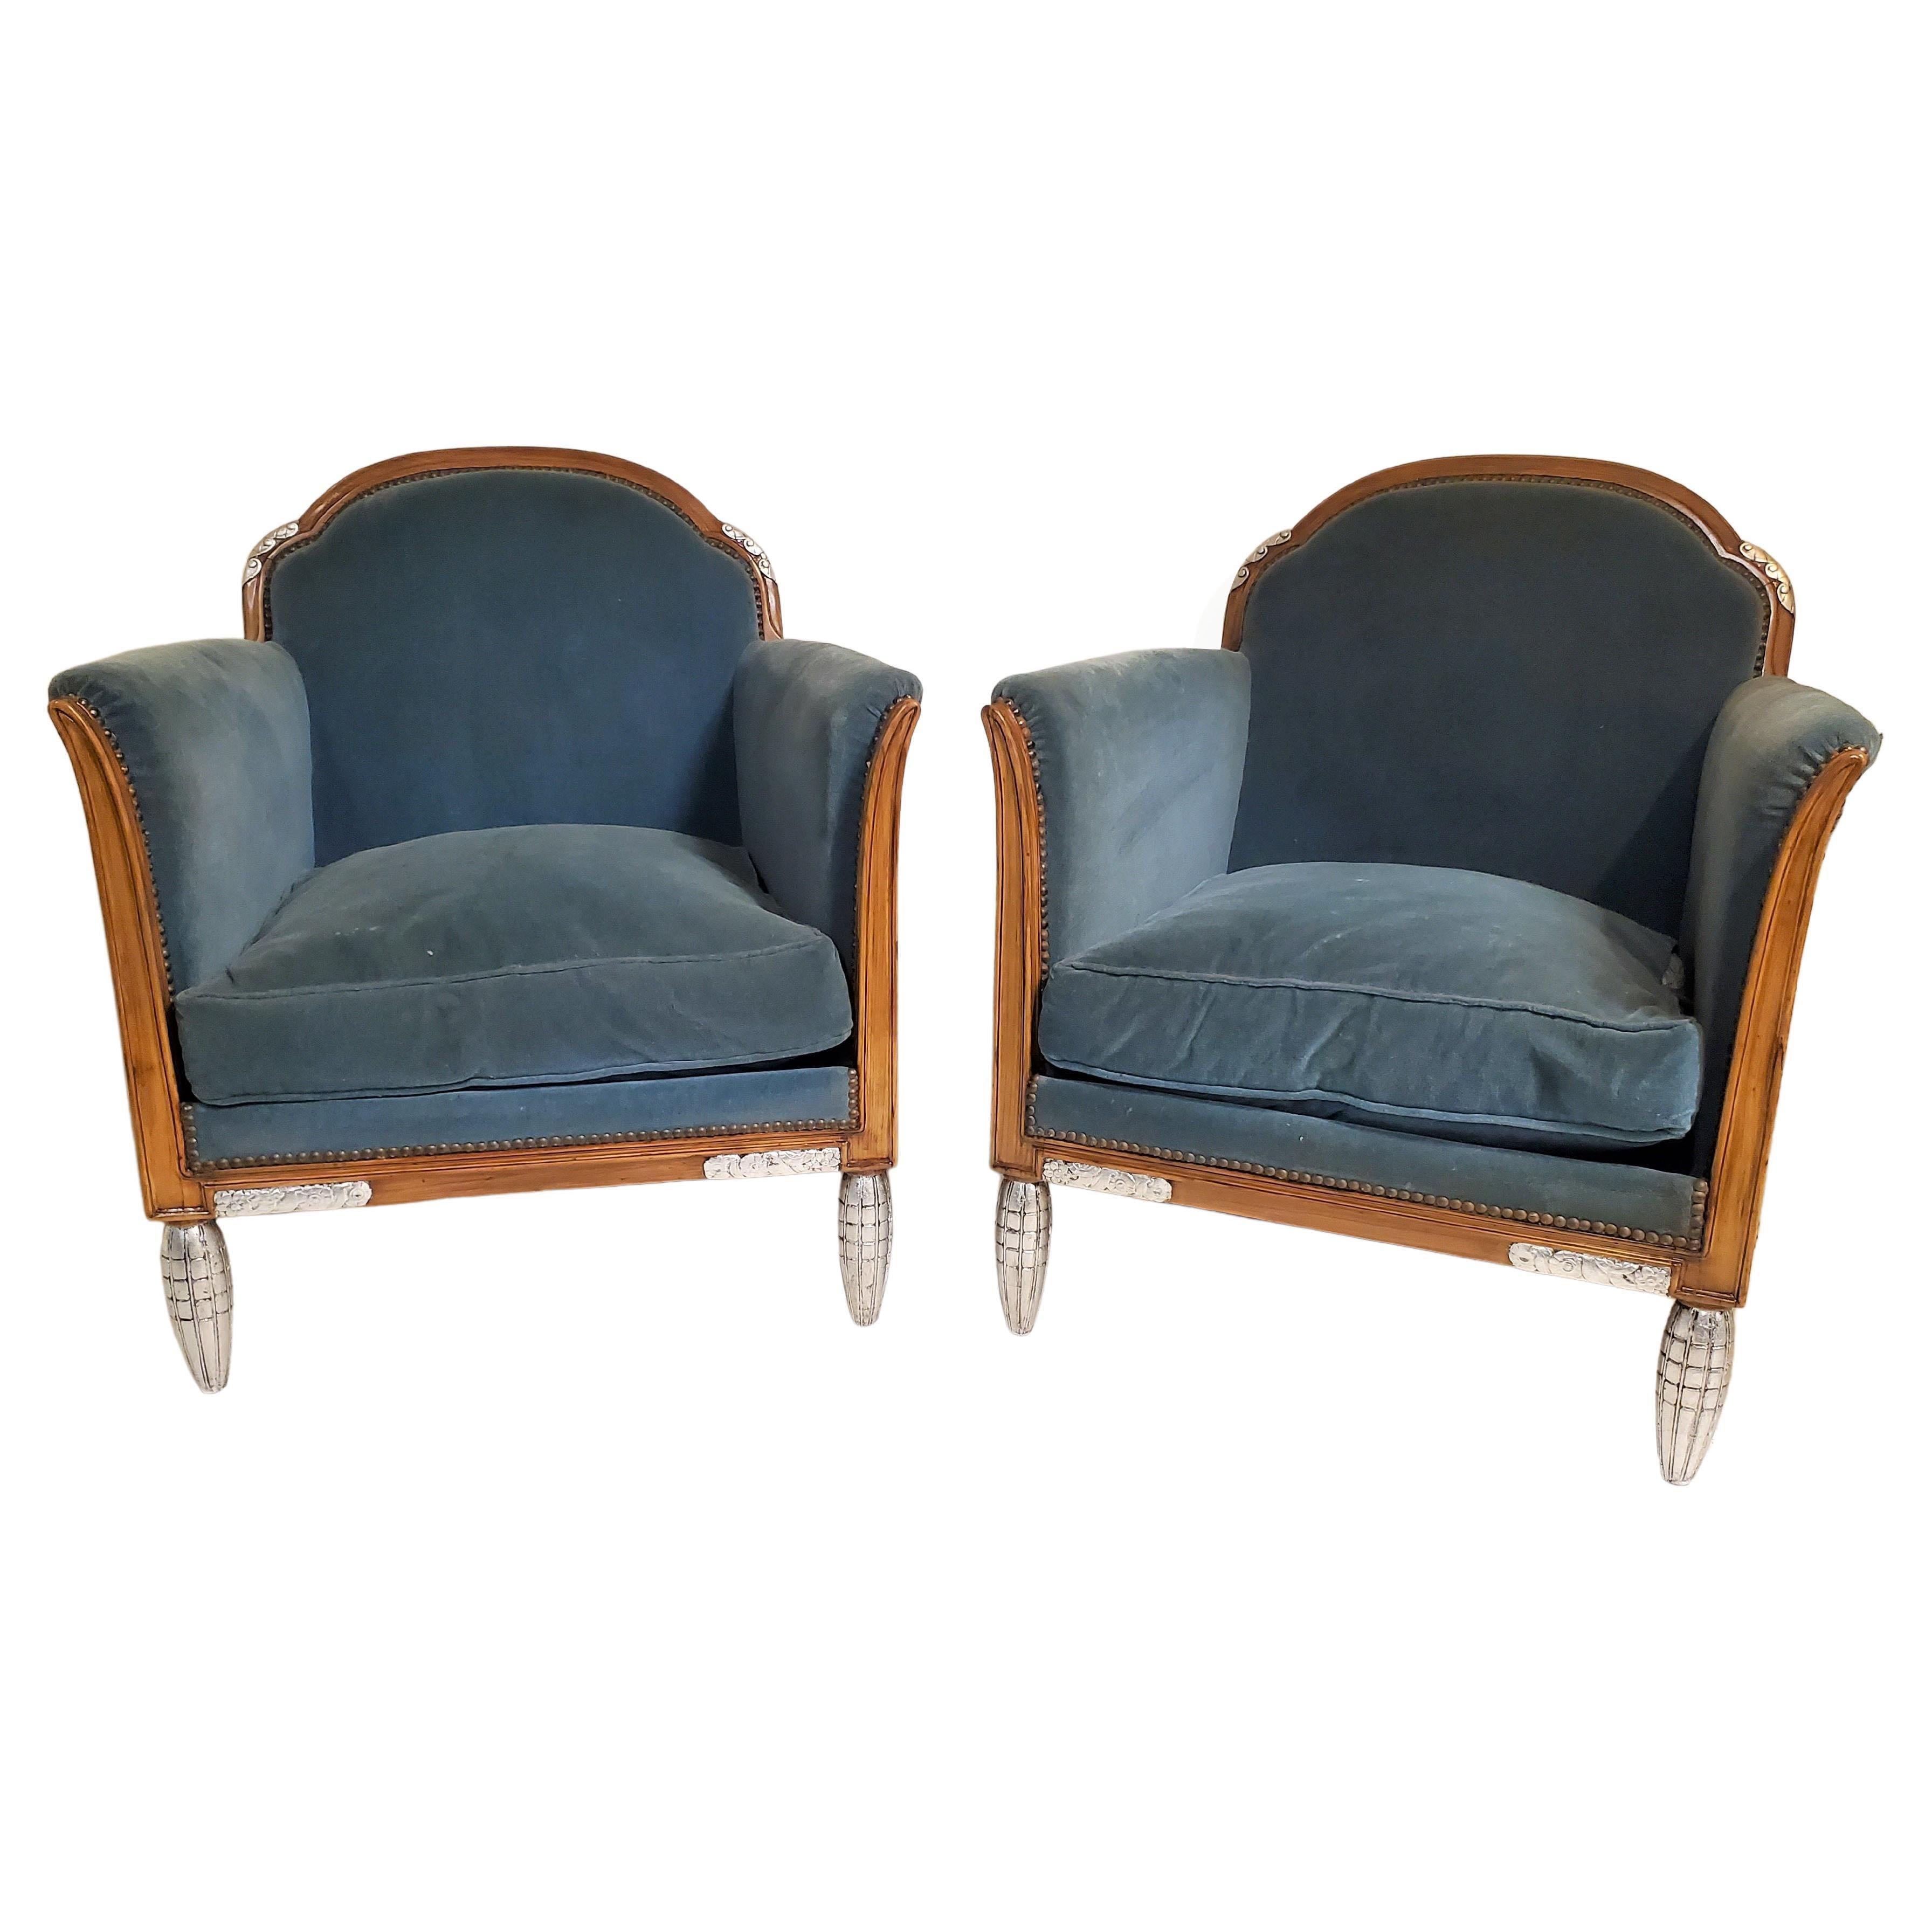 Ein prächtiges Paar großzügiger und bequemer französischer Art-Déco-Sessel, die Paul Follot (1877-1941) zugeschrieben werden. Die anmutig geschwungenen, halbrunden Rückenlehnen und die stilisierten, schaufelförmigen Armlehnen, die sich aufspreizen,